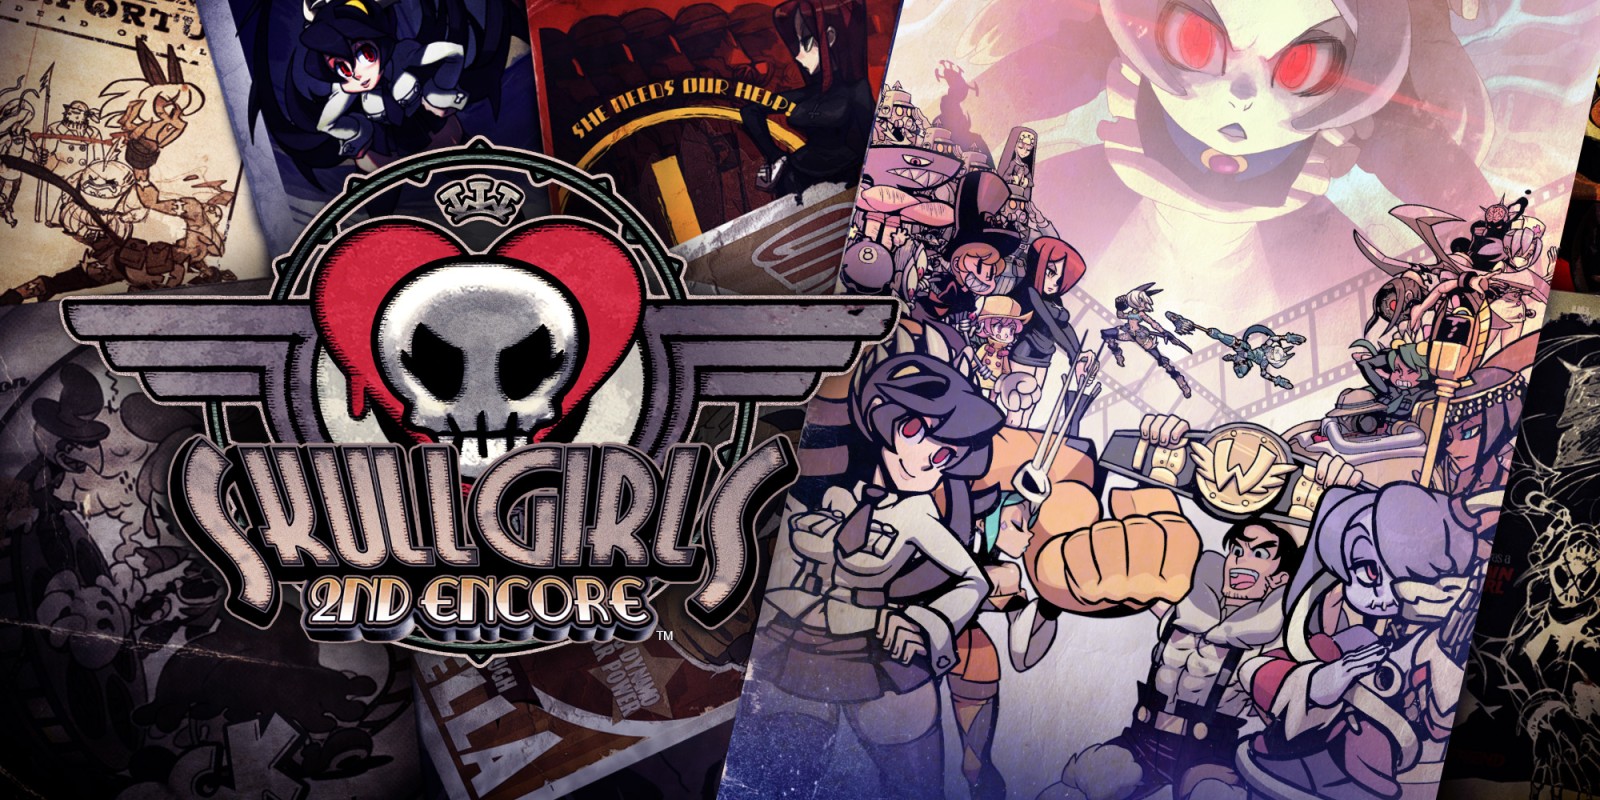 Fightingspelet Skullgirls 2nd Encore kommer att finnas tillgängligt för Xbox-konsoler den 19 juli